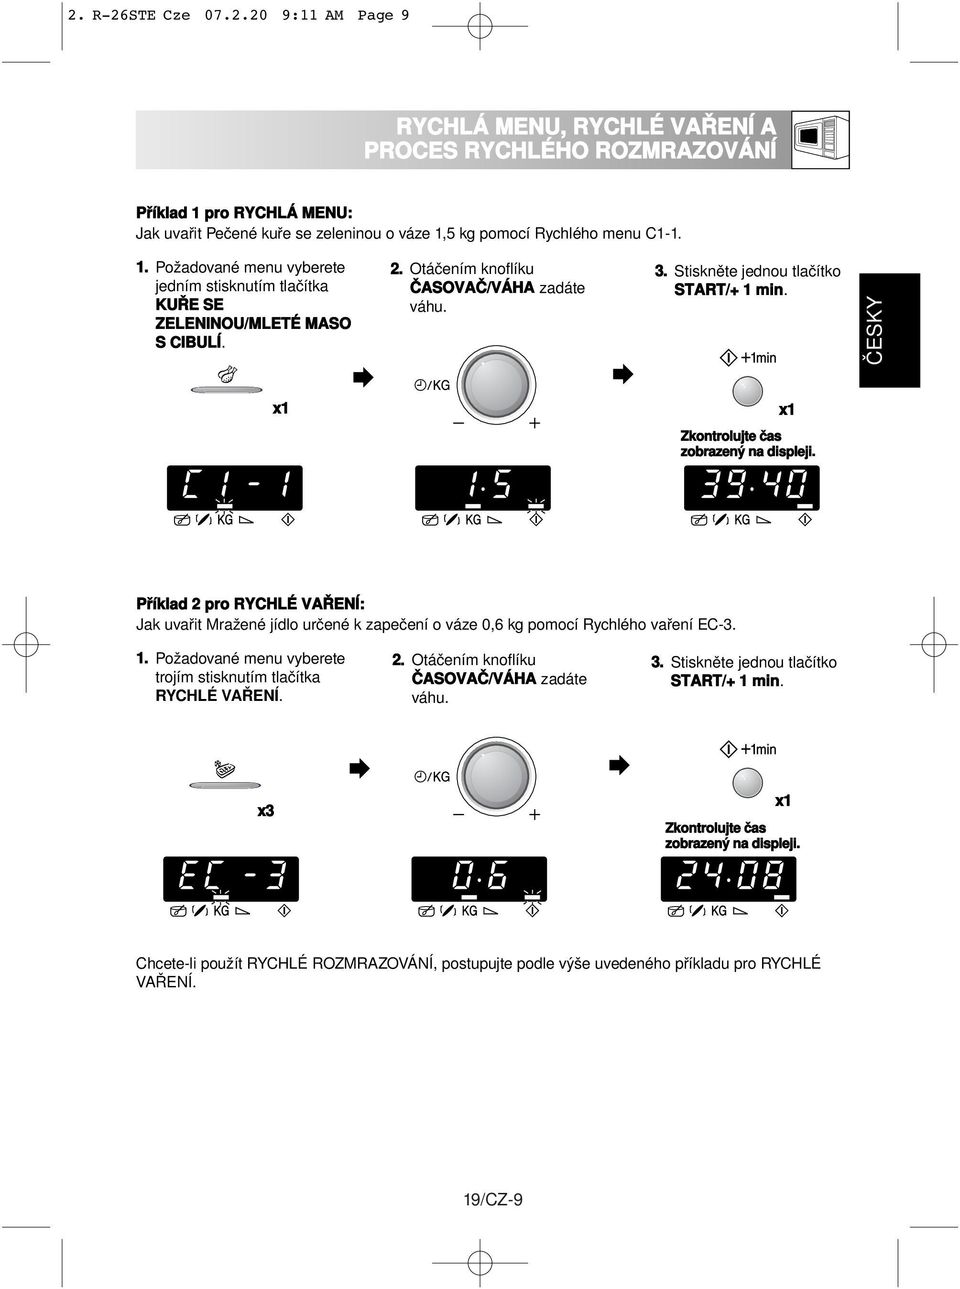 ČESKY x1 x1 Zkontrolujte čas zobrazený na displeji. Příklad 2 pro RYCHLÉ VAŘENÍ: Jak uvařit Mražené jídlo určené k zapečení o váze 0,6 kg pomocí Rychlého vaření EC-3. 1.